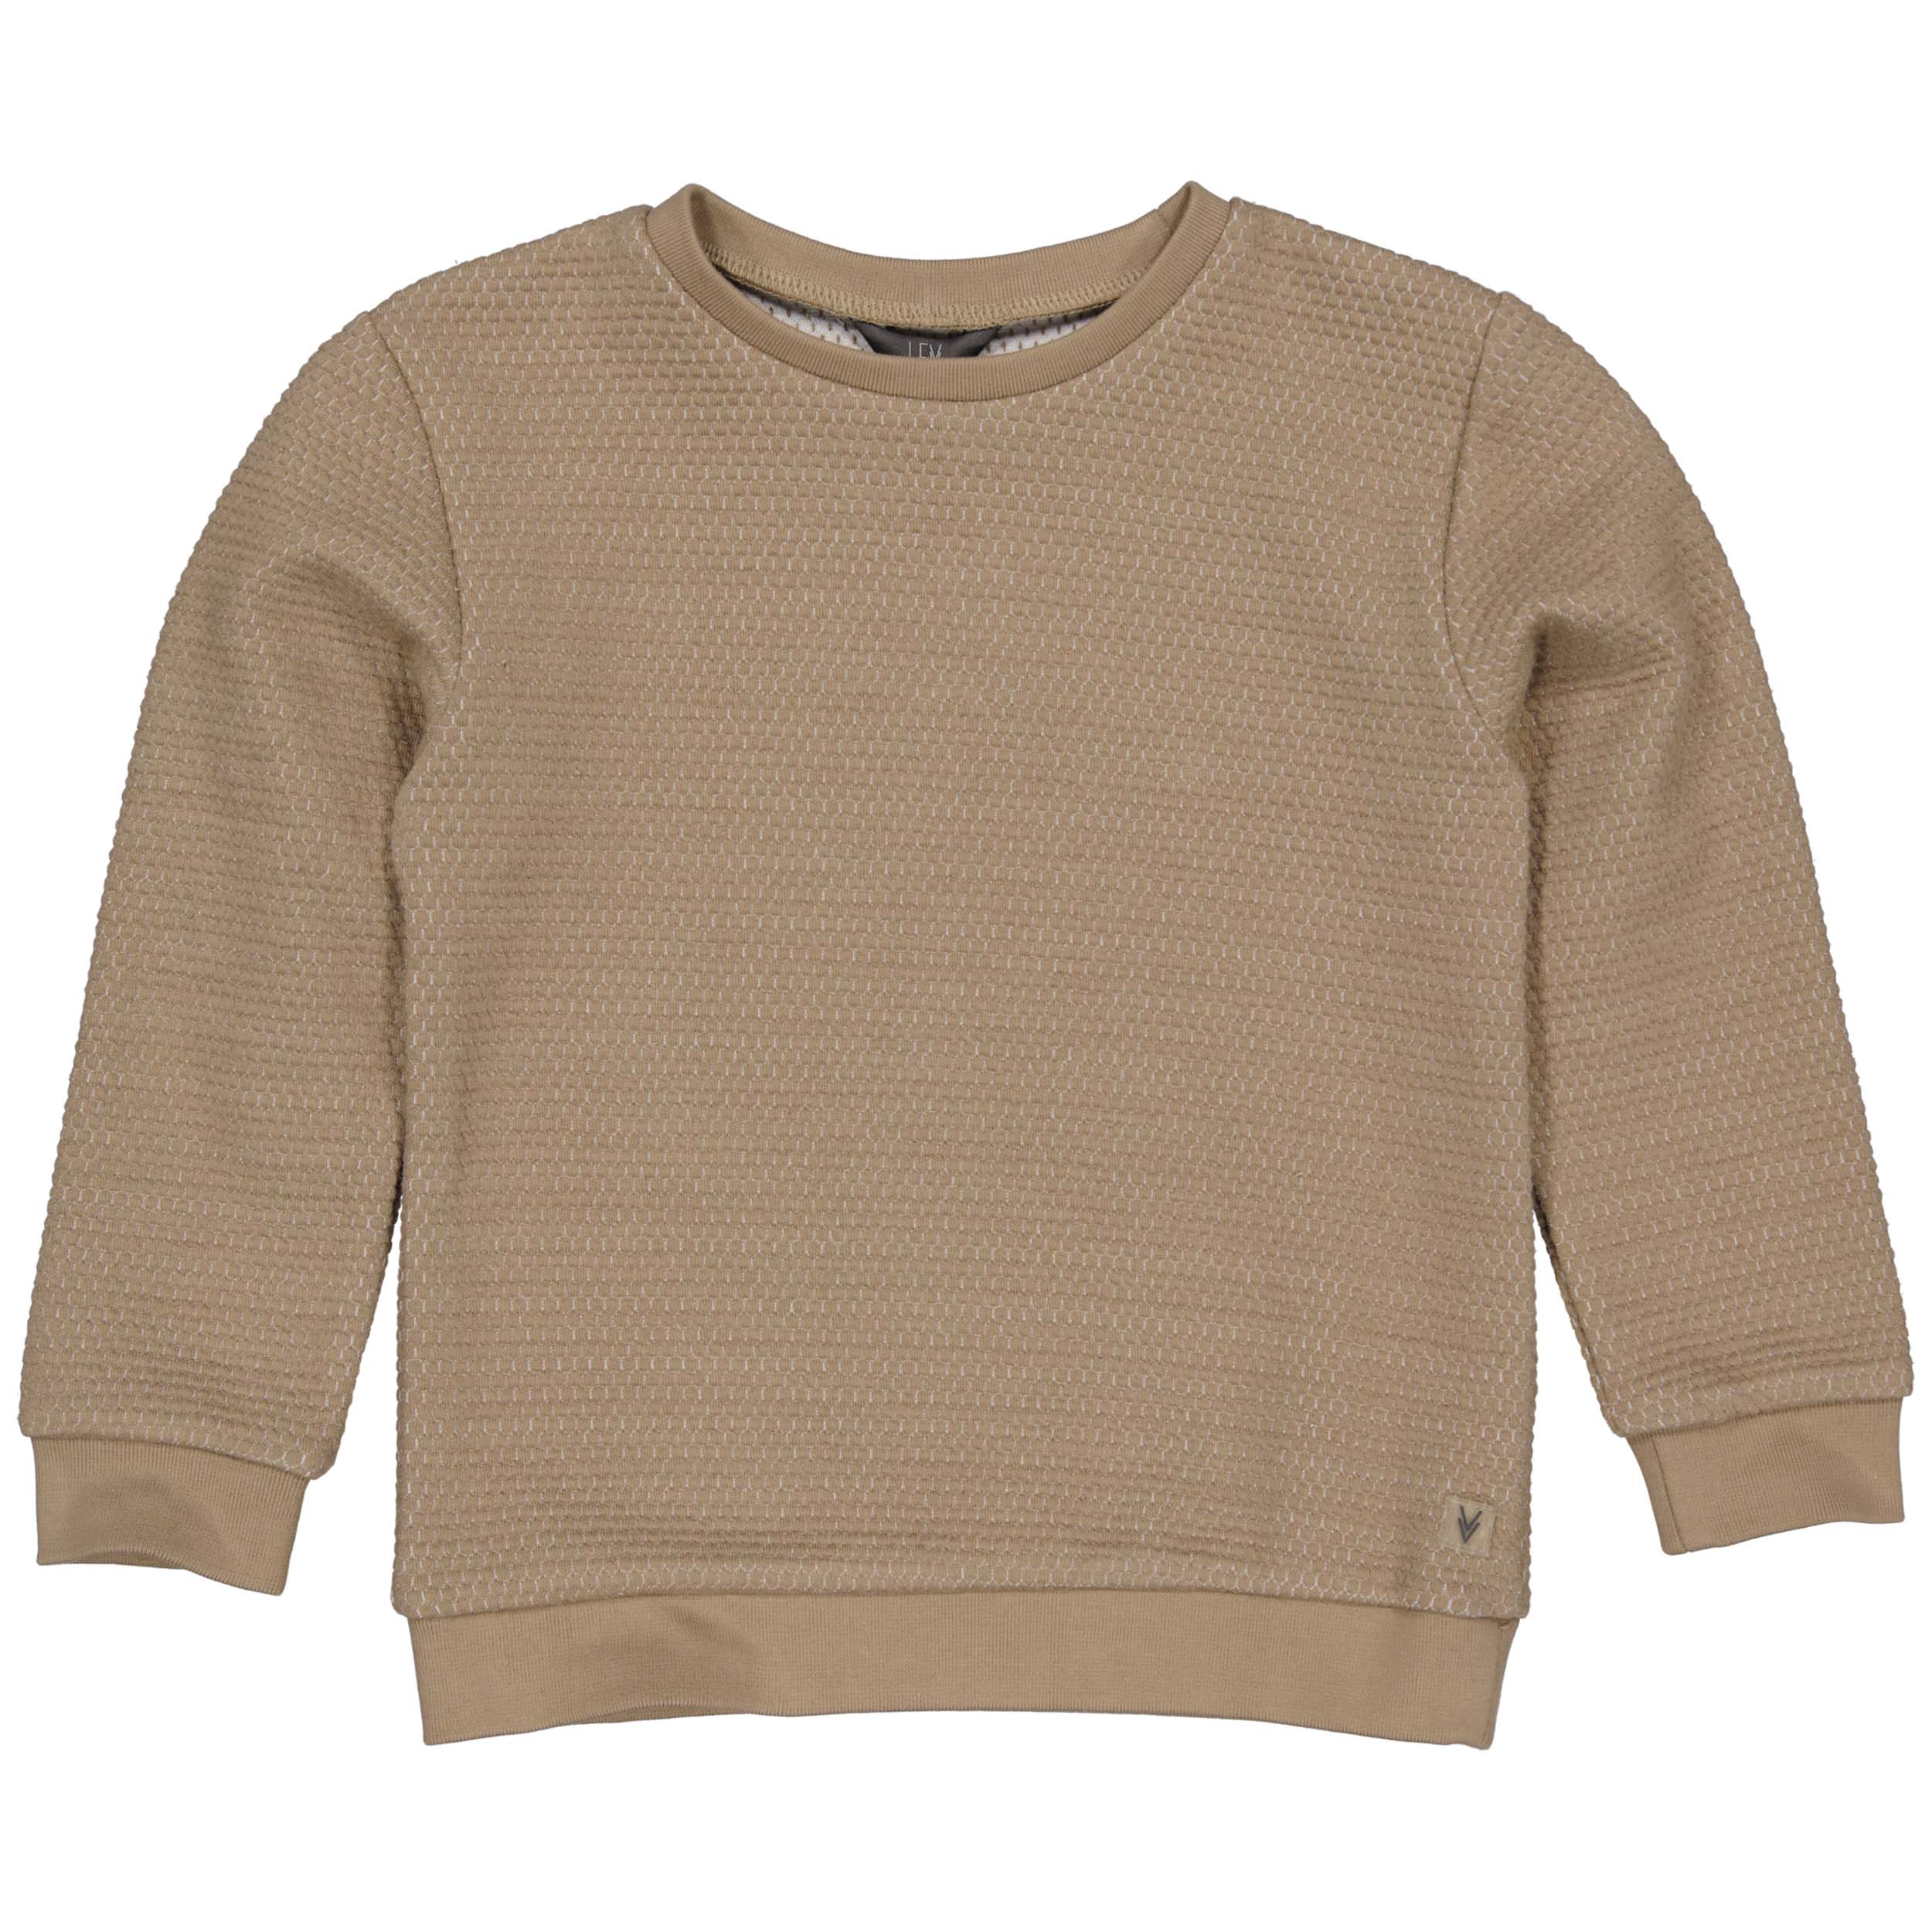 Jongens Sweater GERRITLW231 van Little Levv in de kleur Taupe in maat 128.